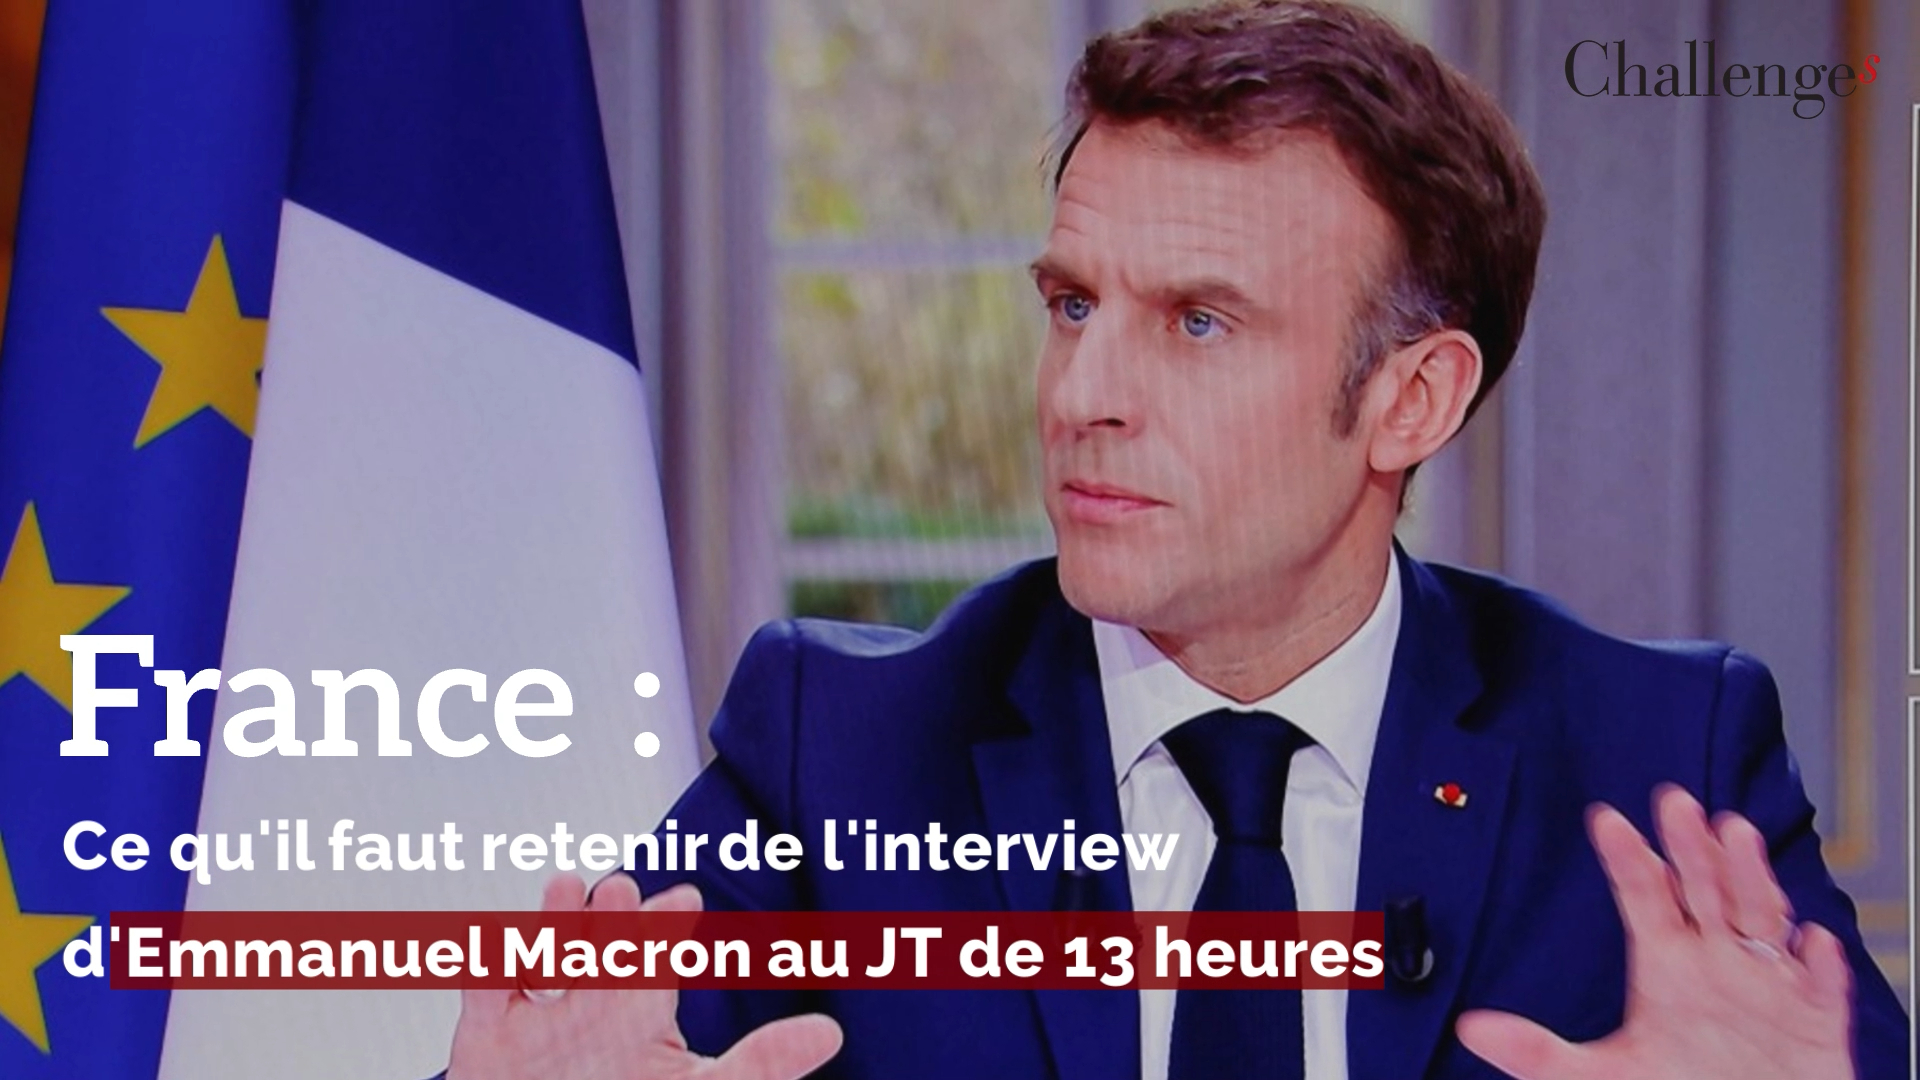 France: Ce qu'il faut retenir de l'interview d'Emmanuel Macron au JT de 13 heures (Challenges Vidéo Economie)